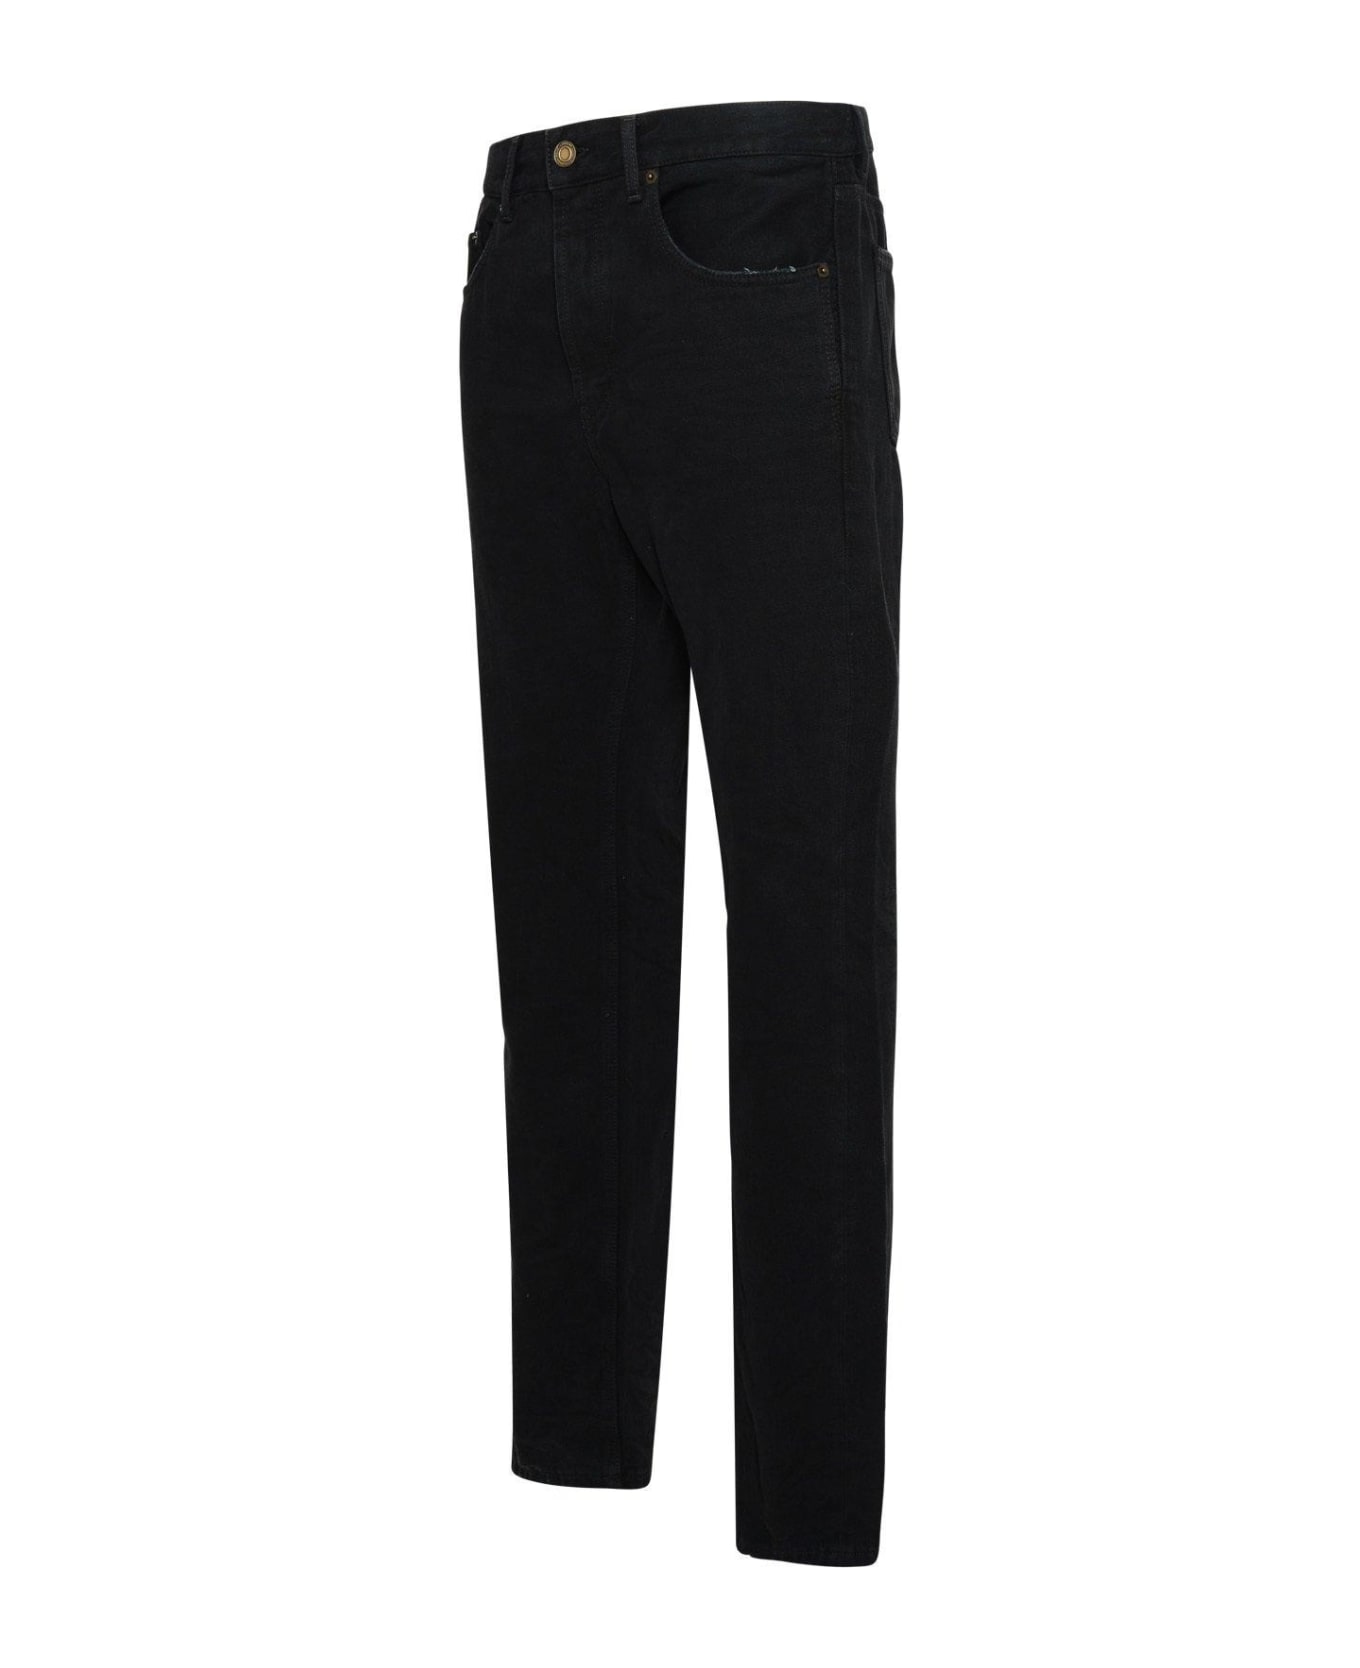 Saint Laurent Five Pocket Jeans - BLACK WASHED